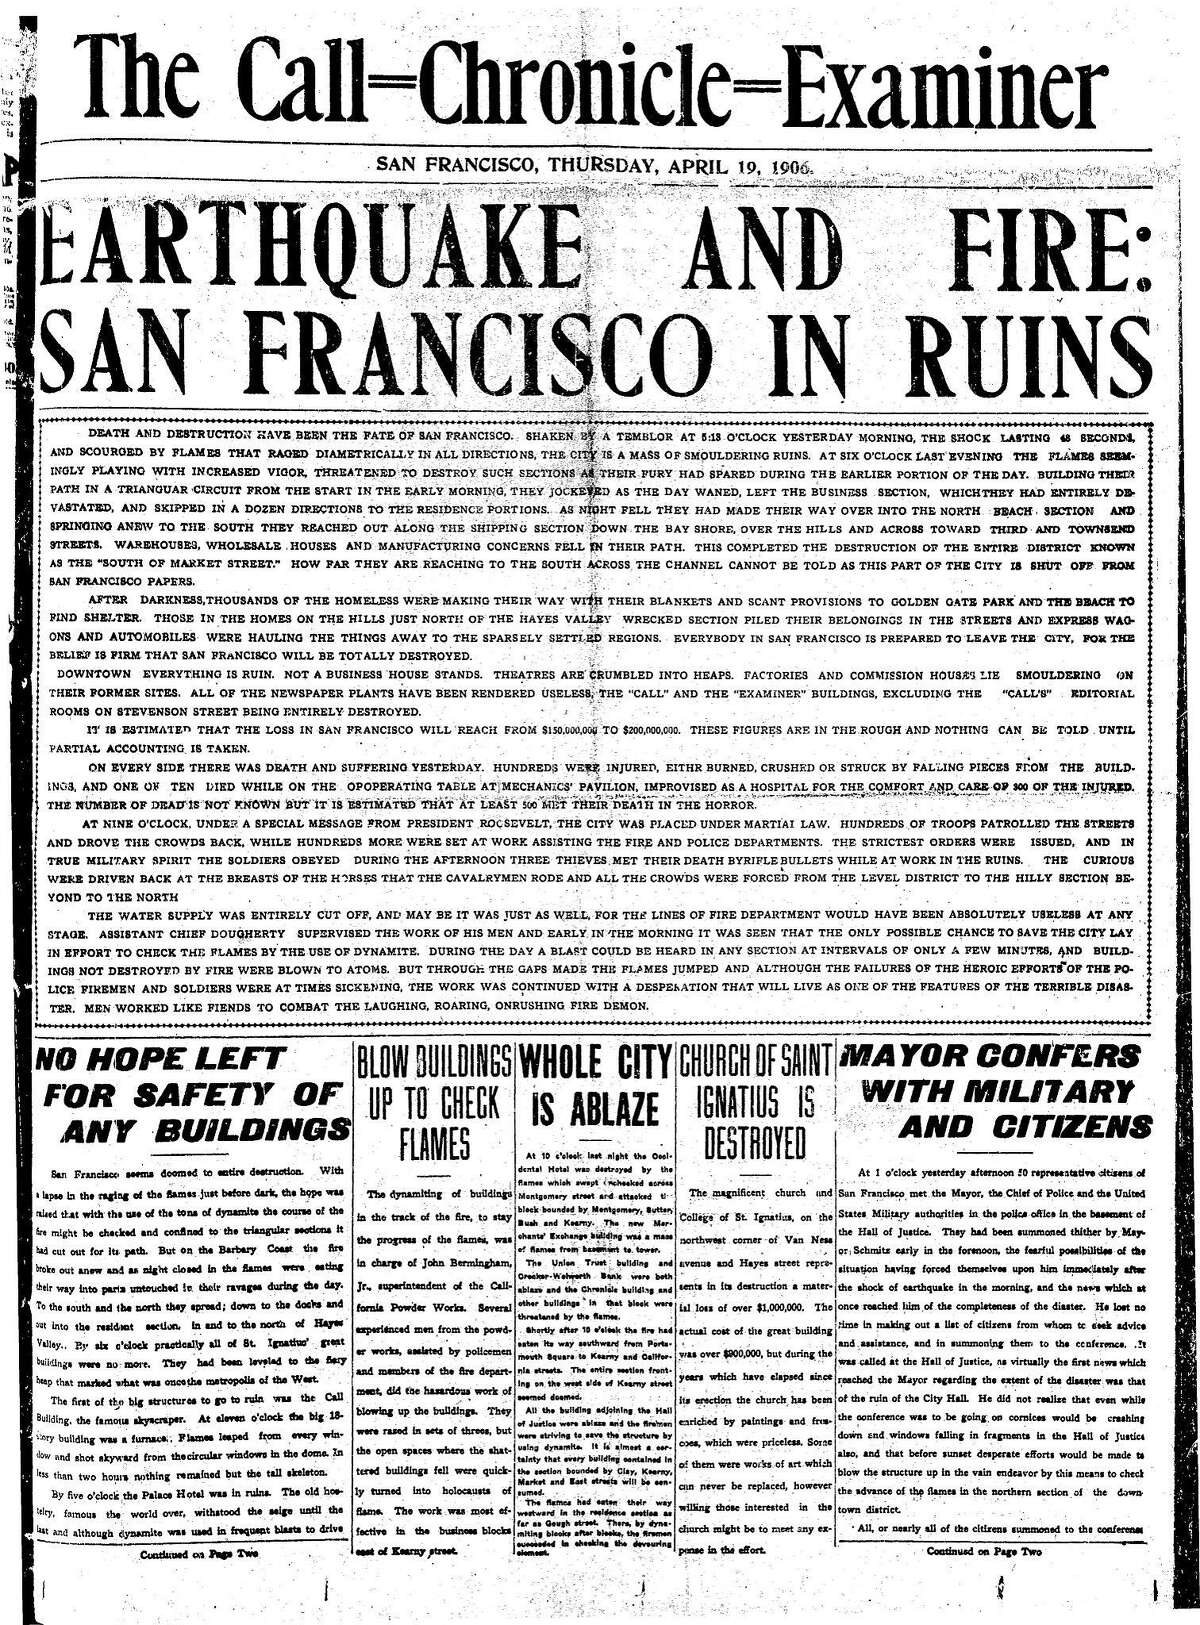 《旧金山纪事报》1906年4月19日的头版，也就是大地震和火灾发生的第二天。这是一份联合报纸，由《Call》、《Examiner》和《Chronicle》的员工撰写，并在奥克兰印刷